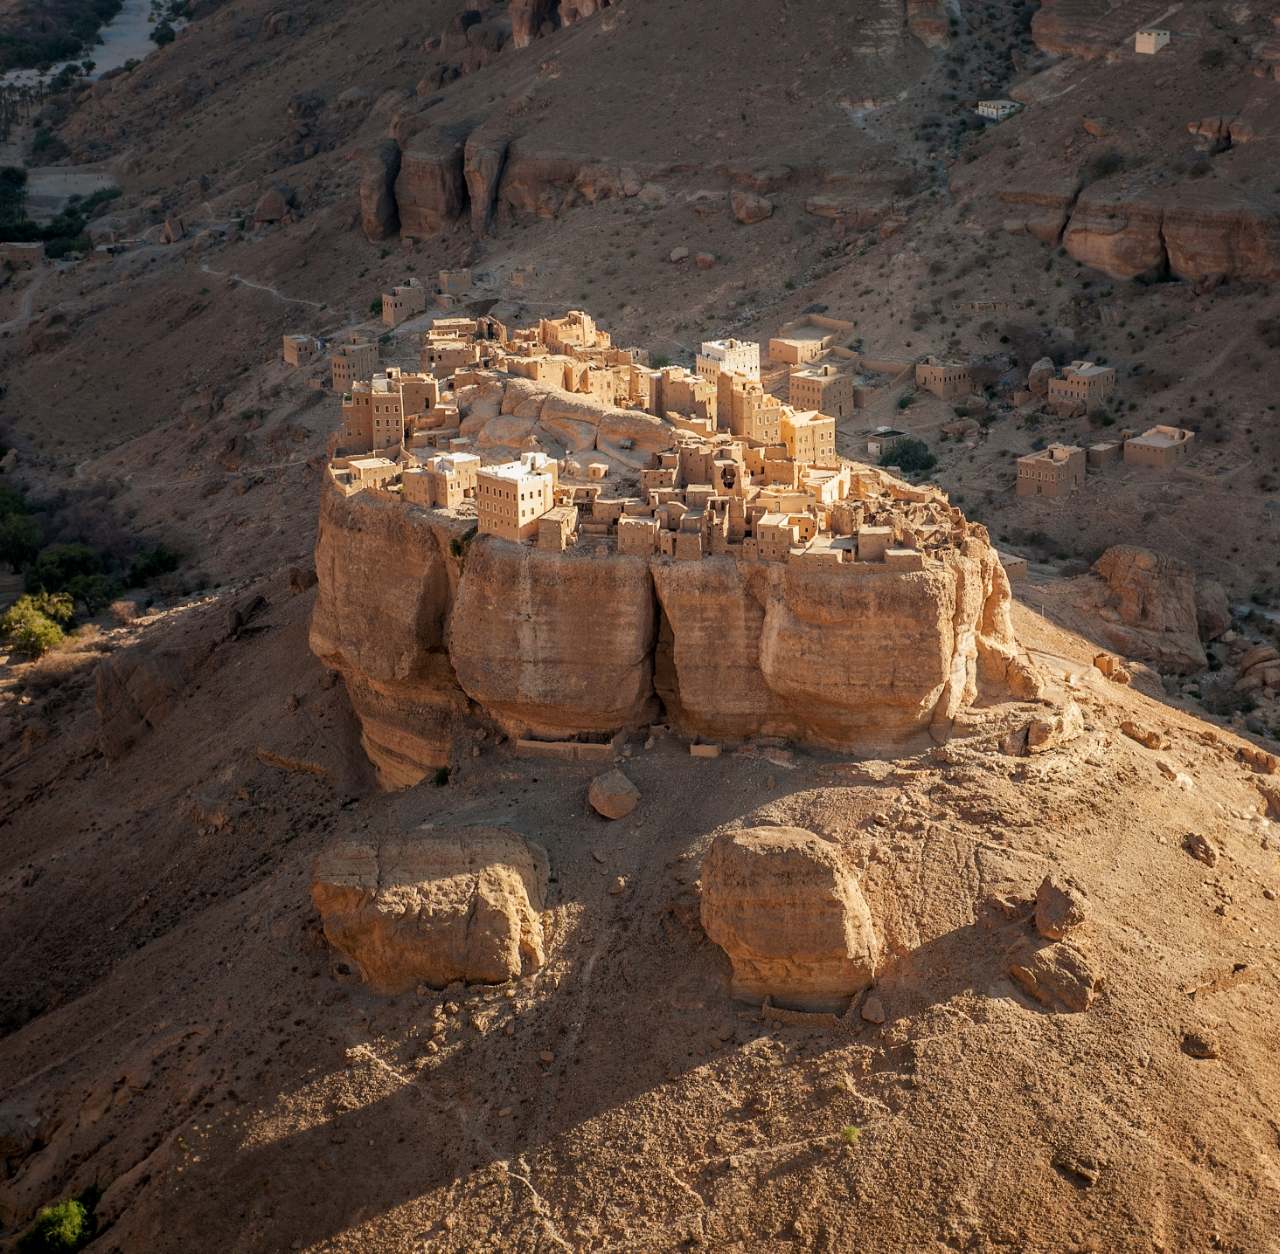 Neverjetna vas v Jemnu, zgrajena na 150 metrov visokem velikanskem skalnem bloku 1